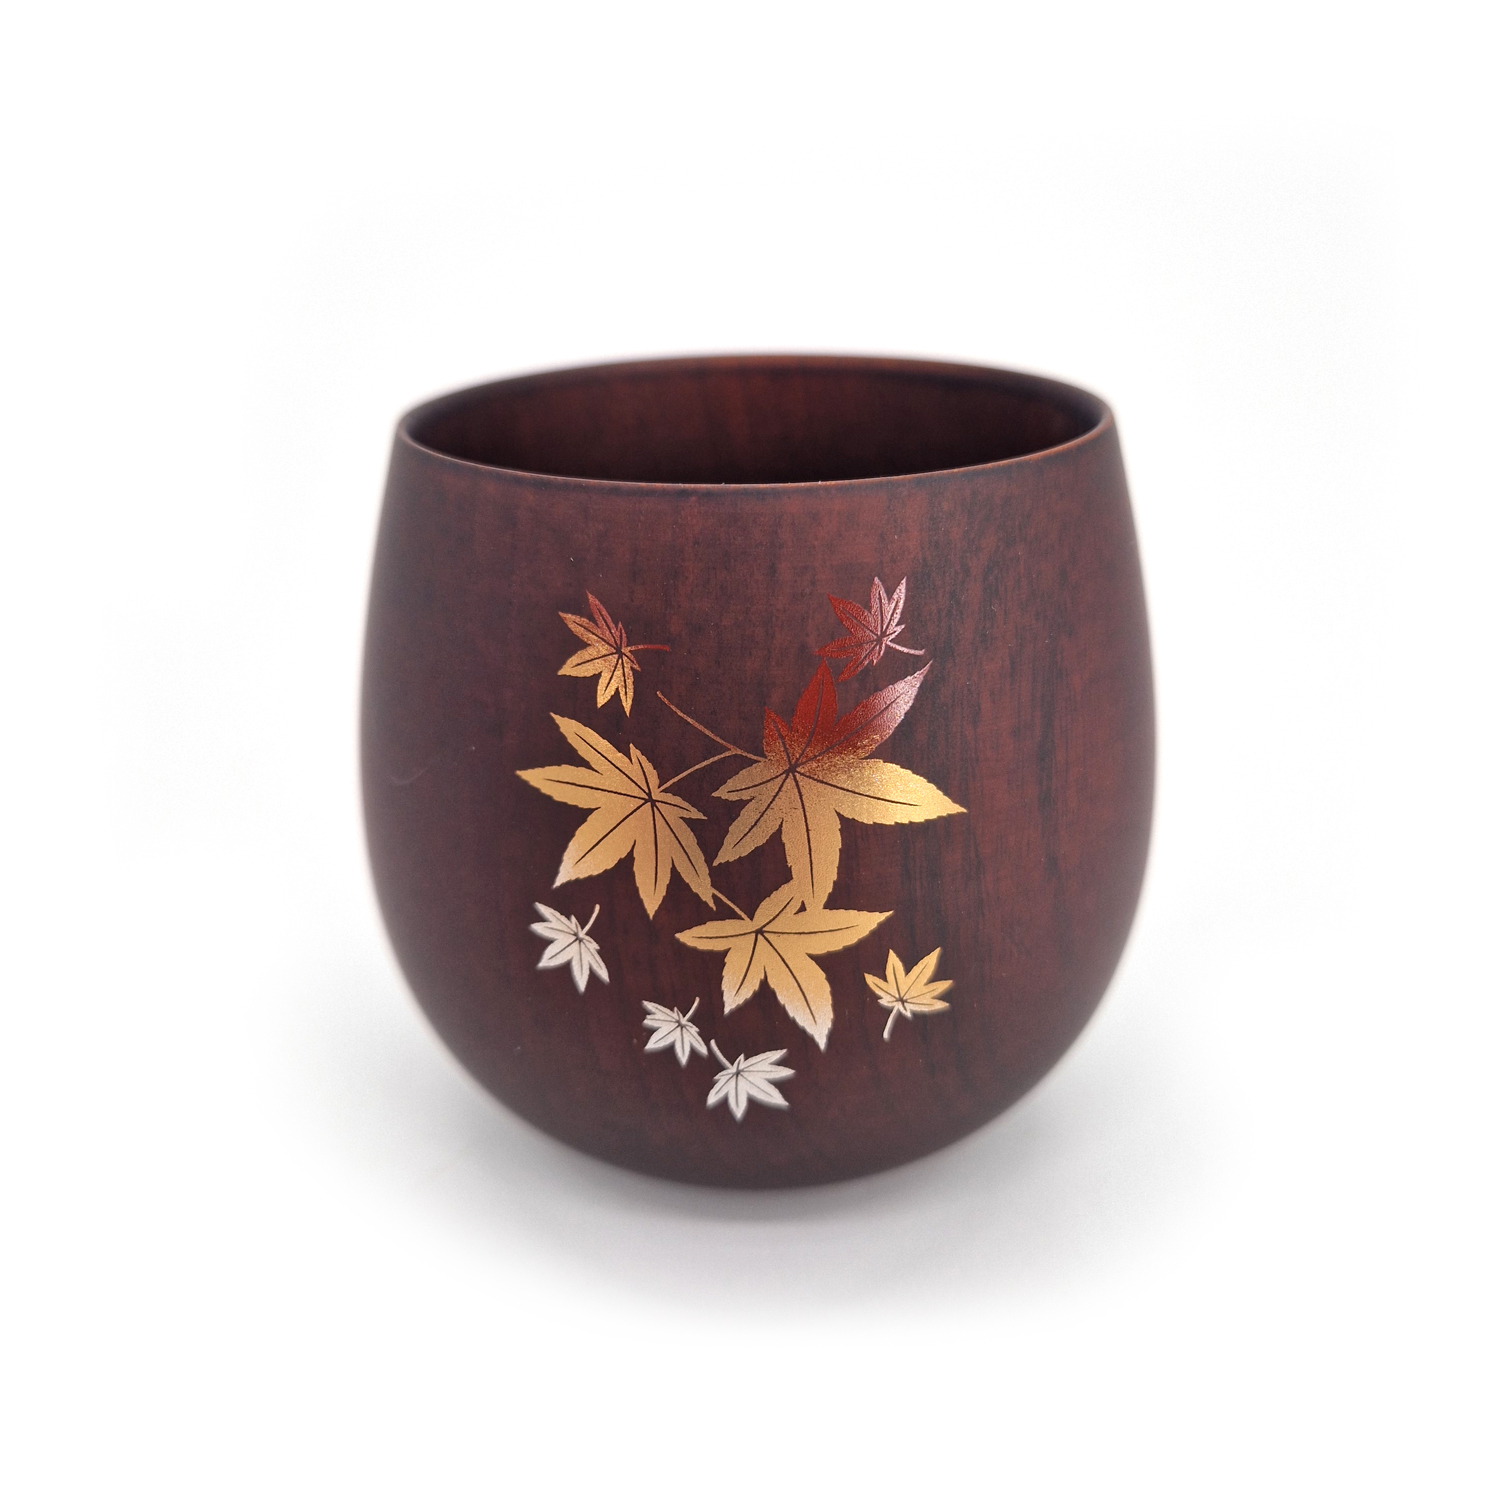 Tazza da tè giapponese in legno natsume scuro con motivo a foglie d'acero,  MOMIJI 1